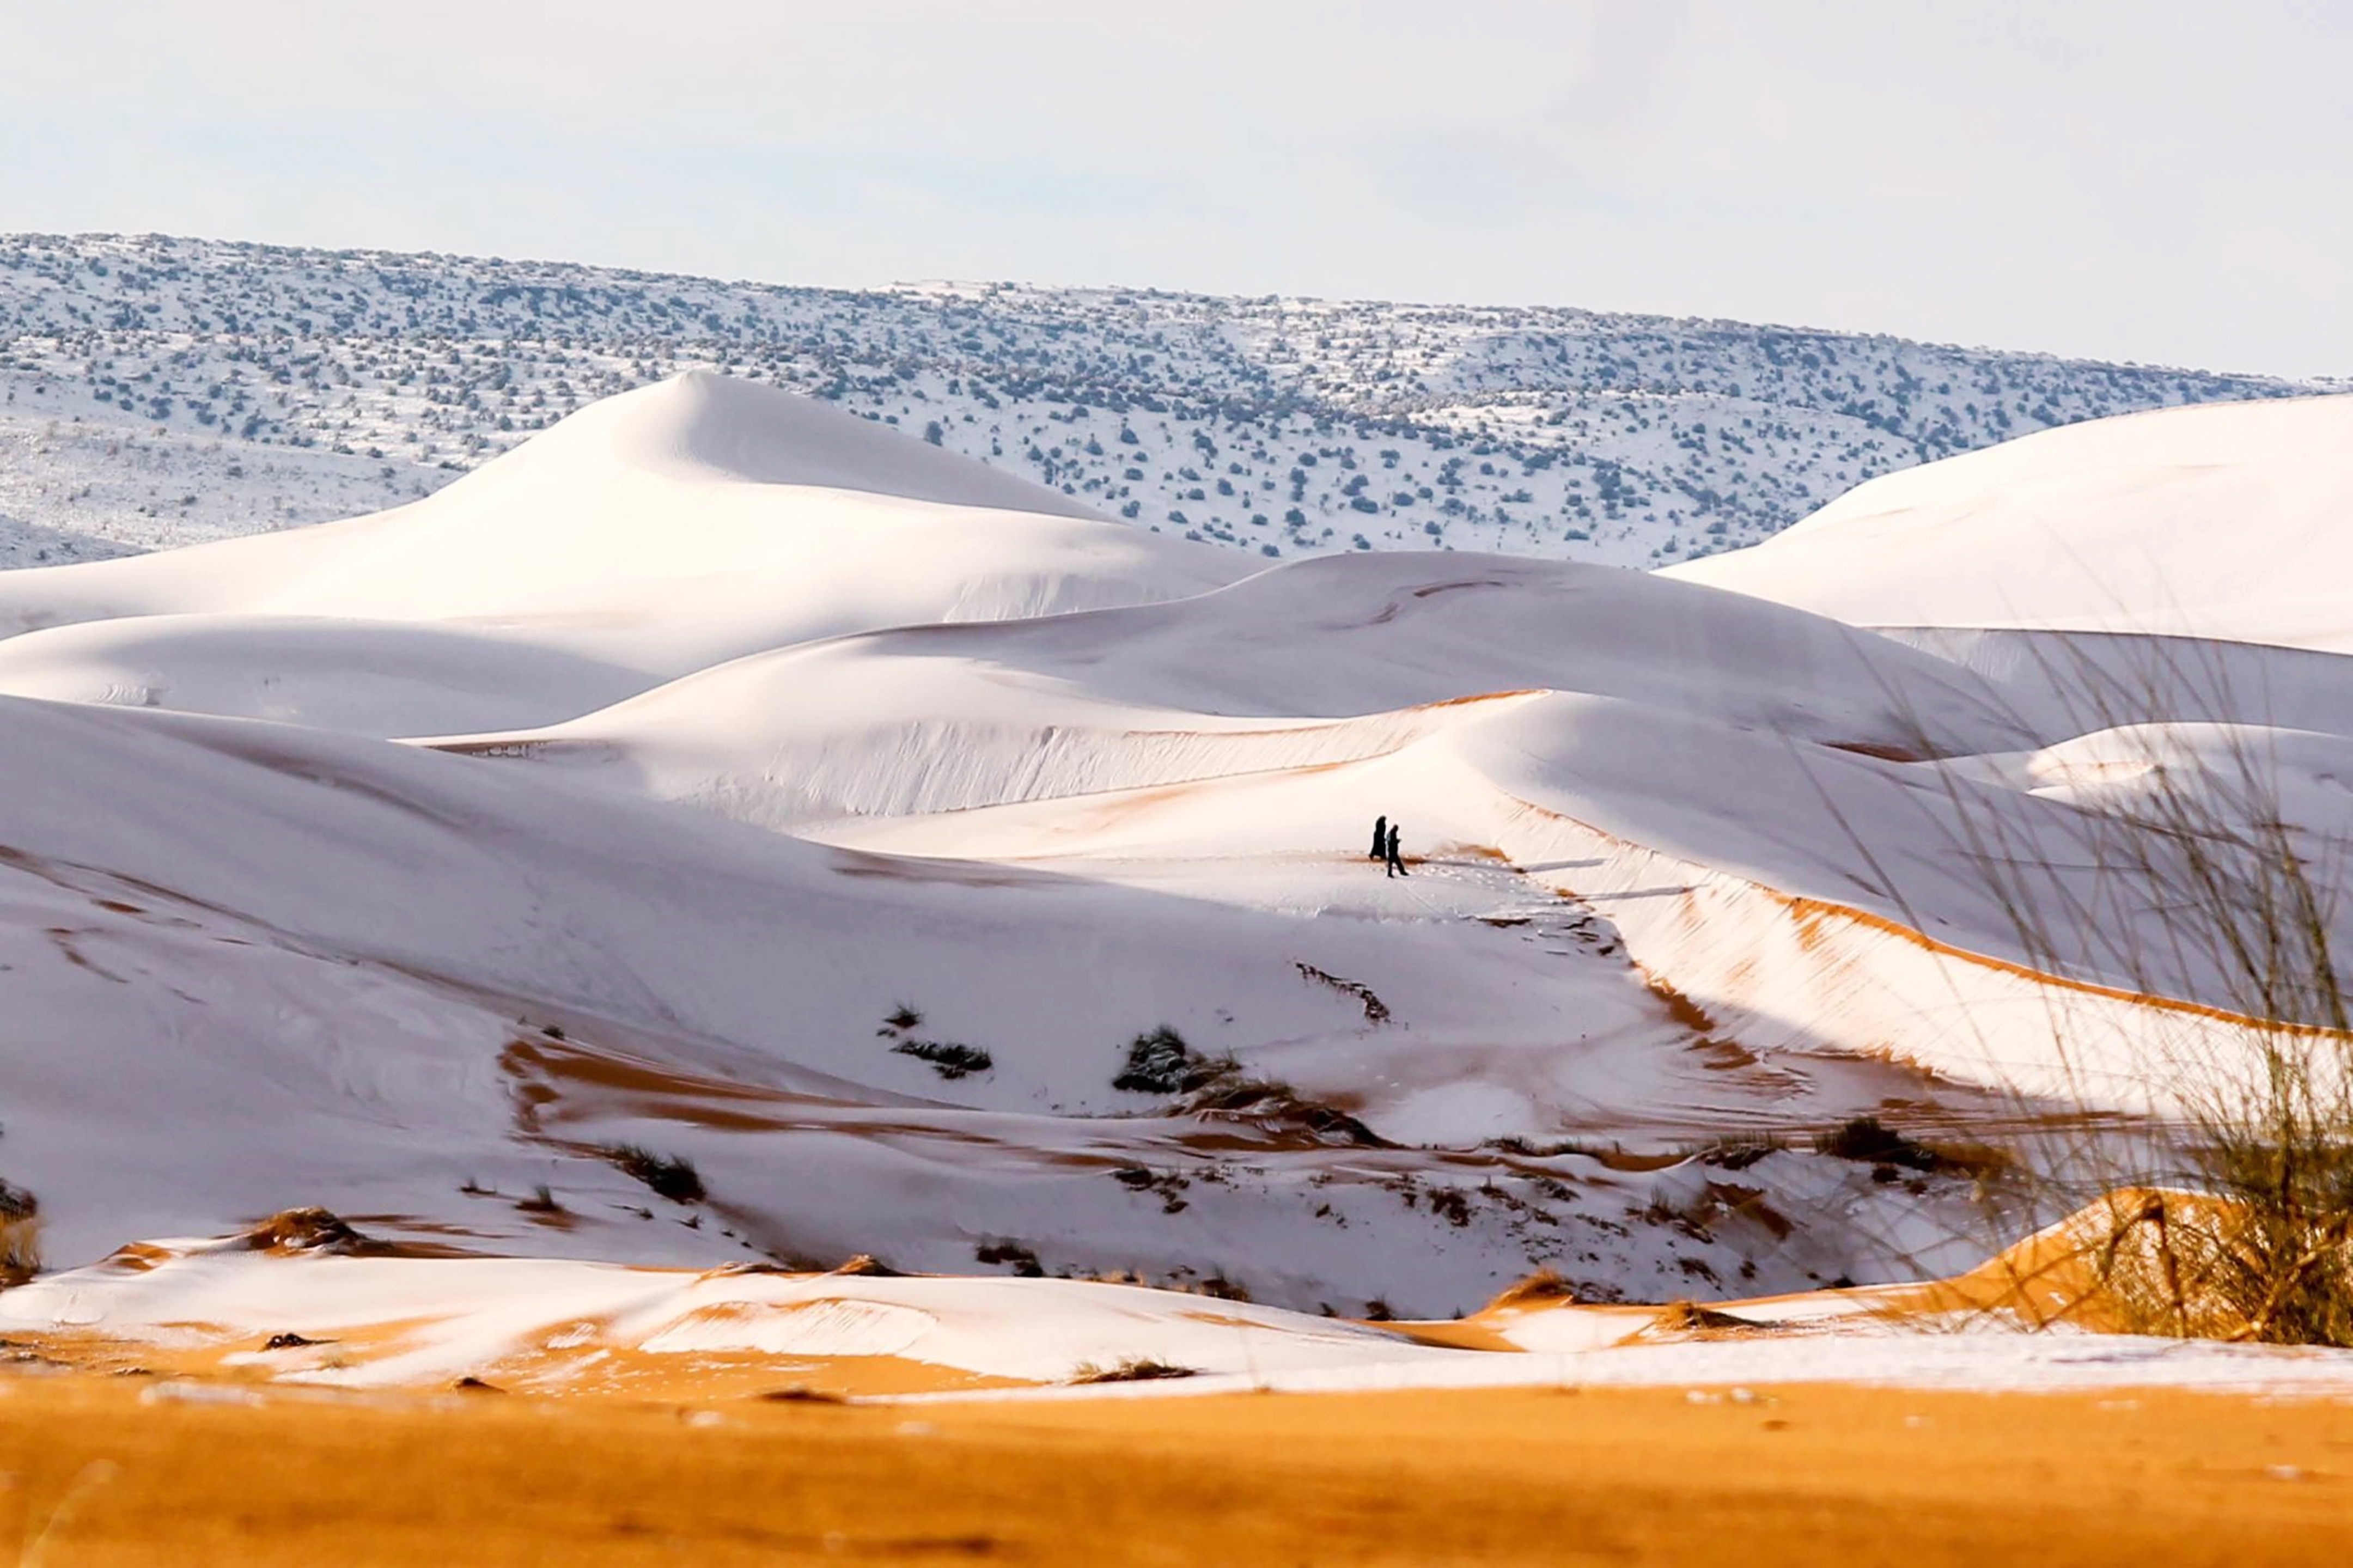 Скачать обои бесплатно Песок, Снег, Пустыня, Сахара, Африка, Алжир, Земля/природа картинка на рабочий стол ПК